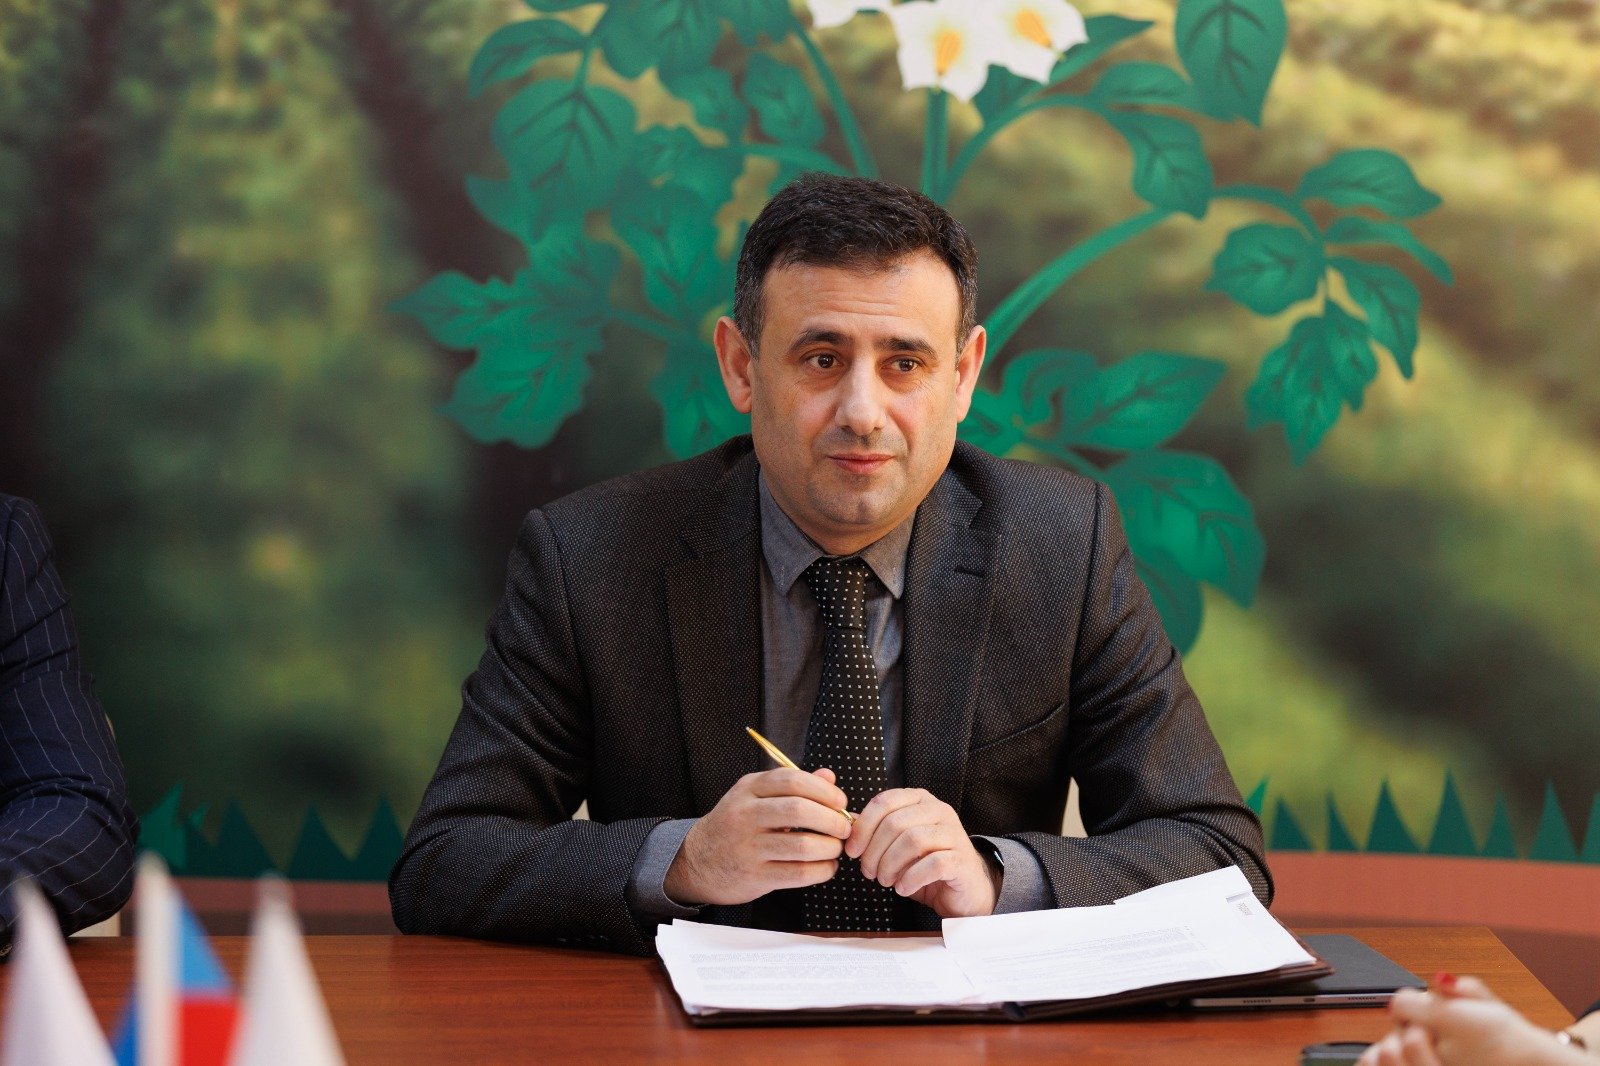 Началась реализация проекта «Поддержка развития картофельного хозяйства в Дашкесанском районе» (ФОТО)